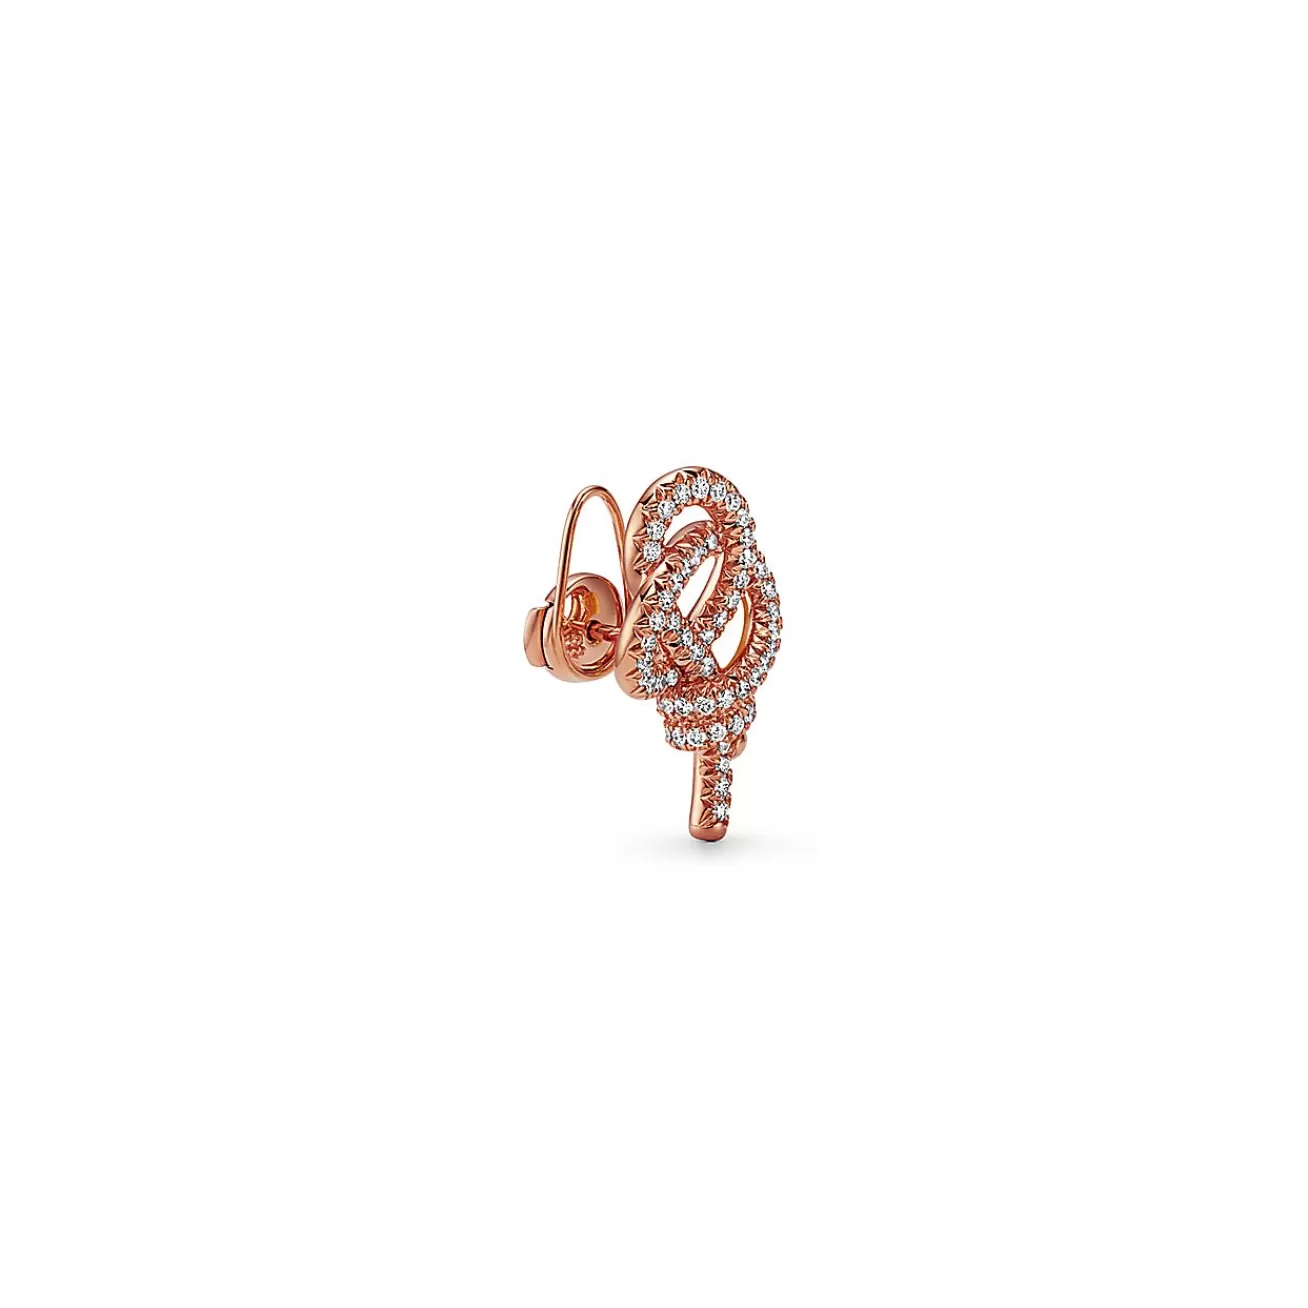 Tiffany & Co. Tiffany Keys Woven Keys Earrings in Rose Gold with Diamonds | ^ Earrings | New Jewelry